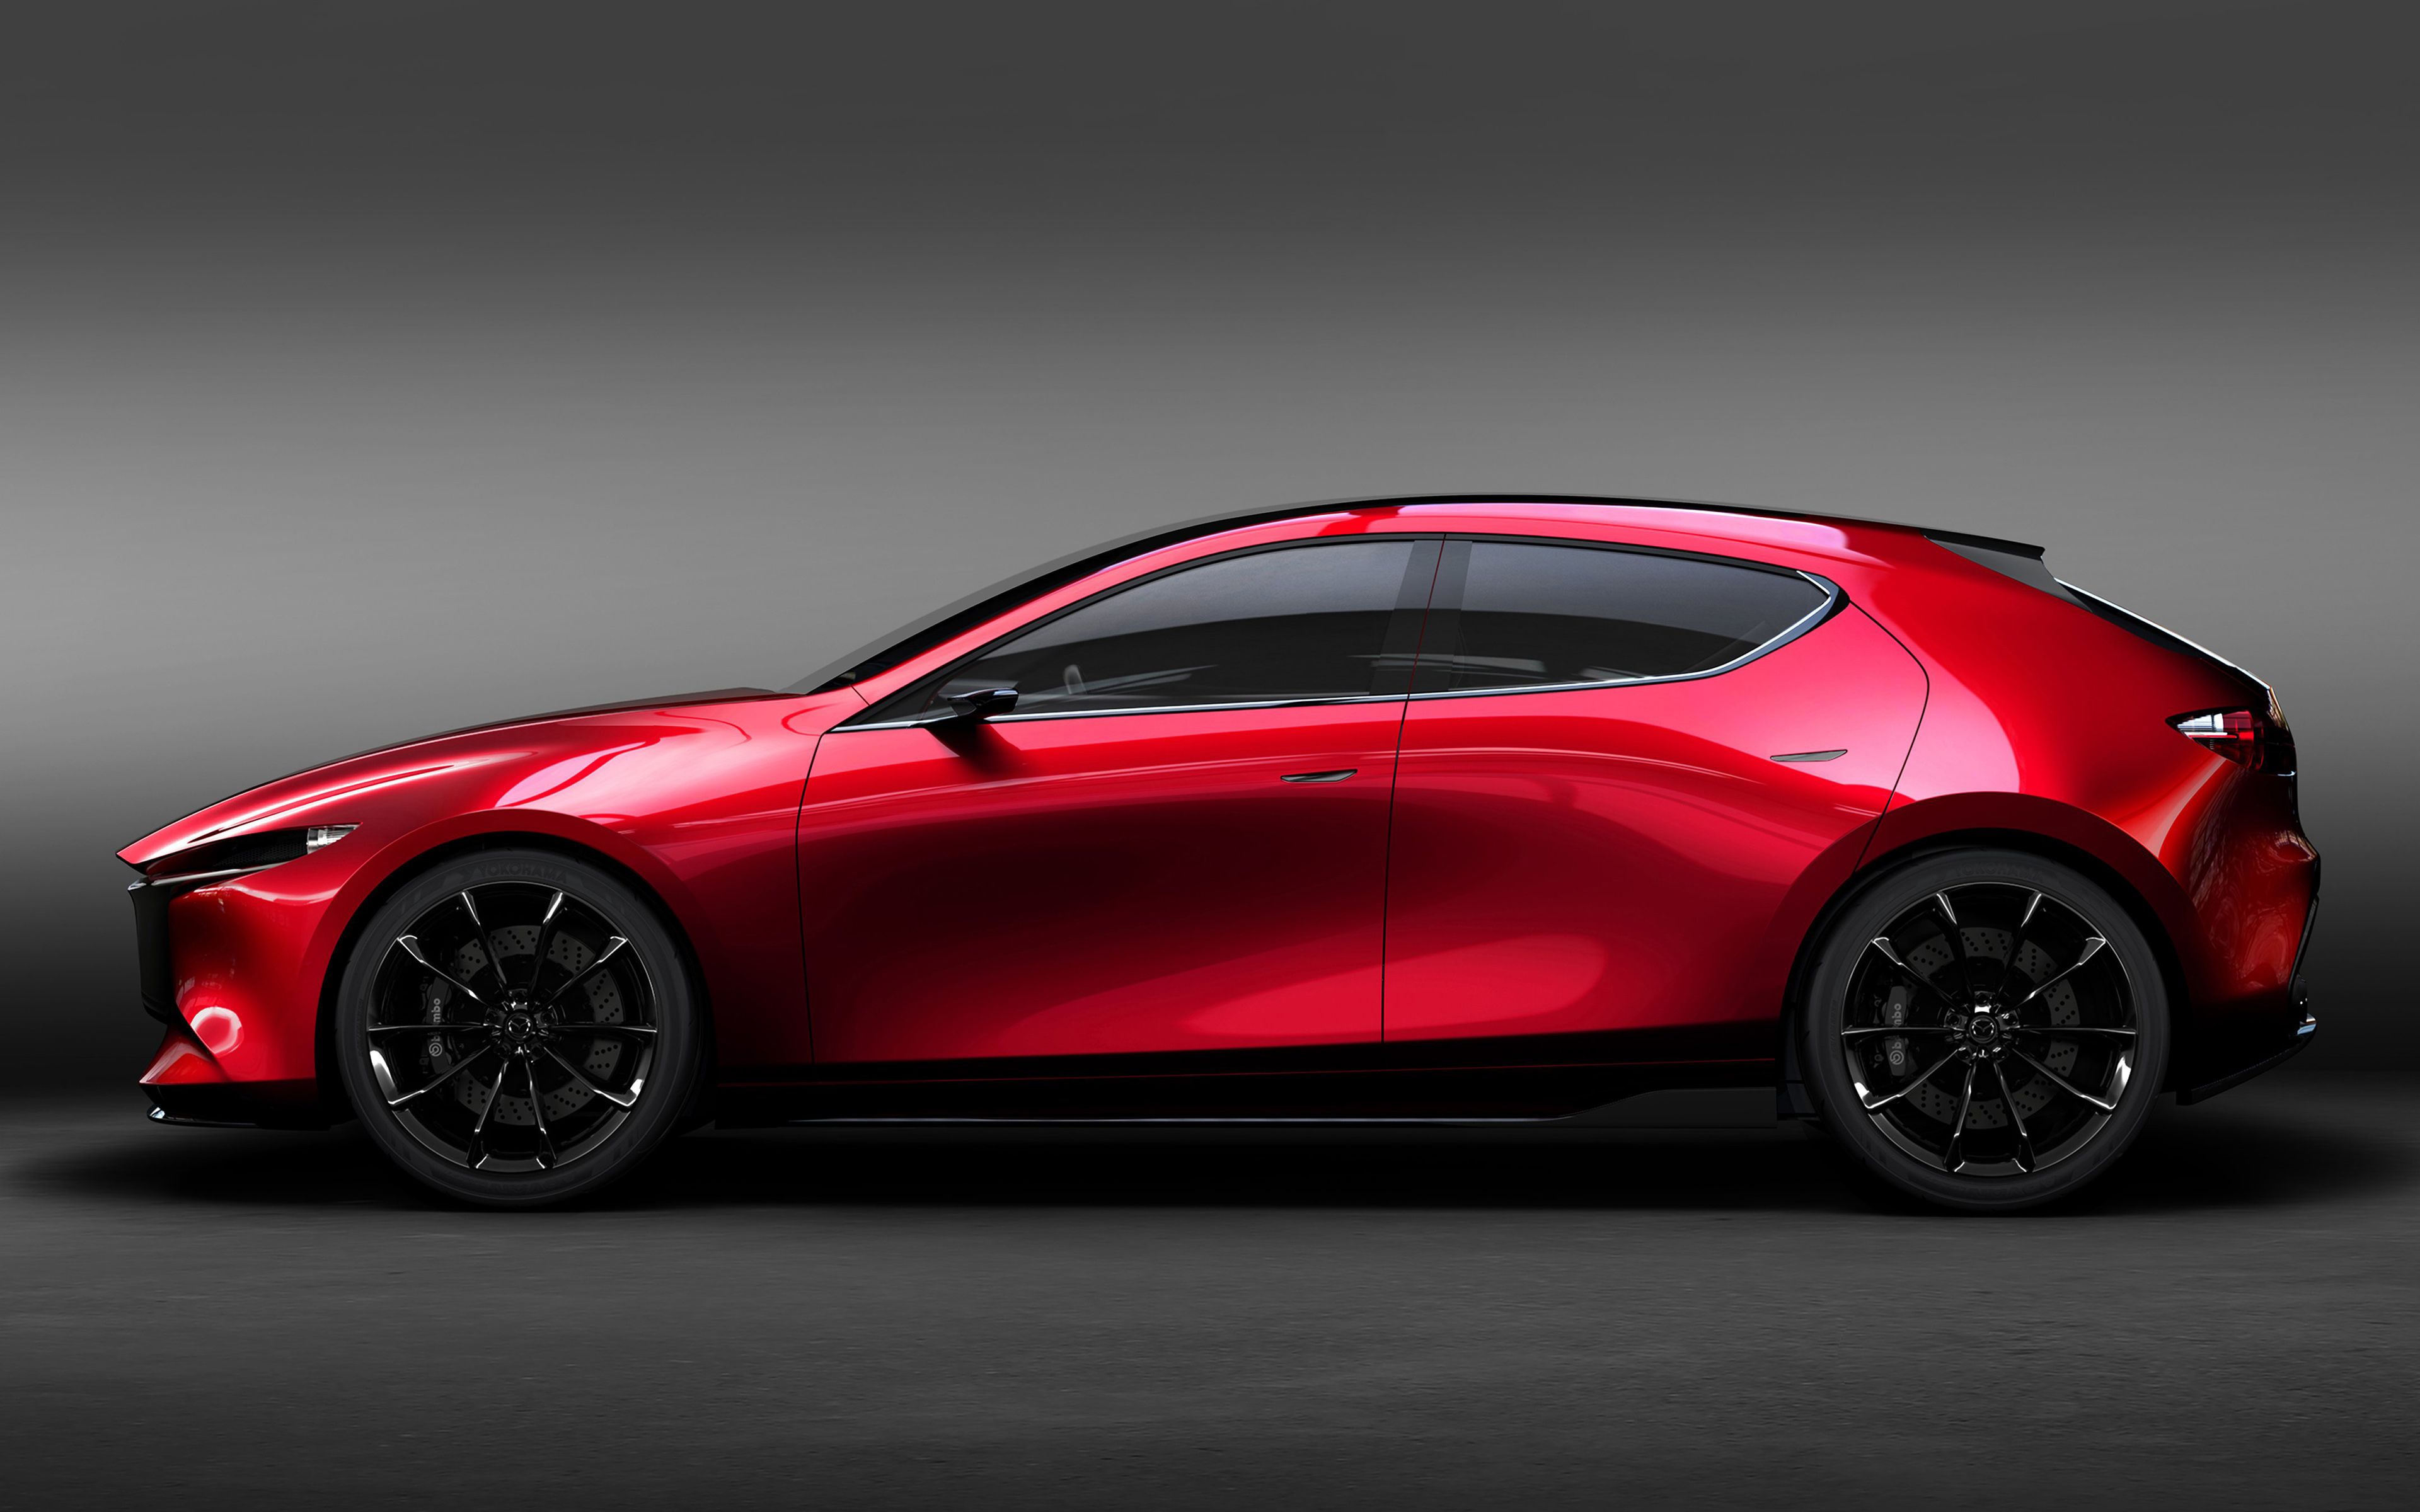 Download wallpaper Mazda hatchback, concept, new car, side